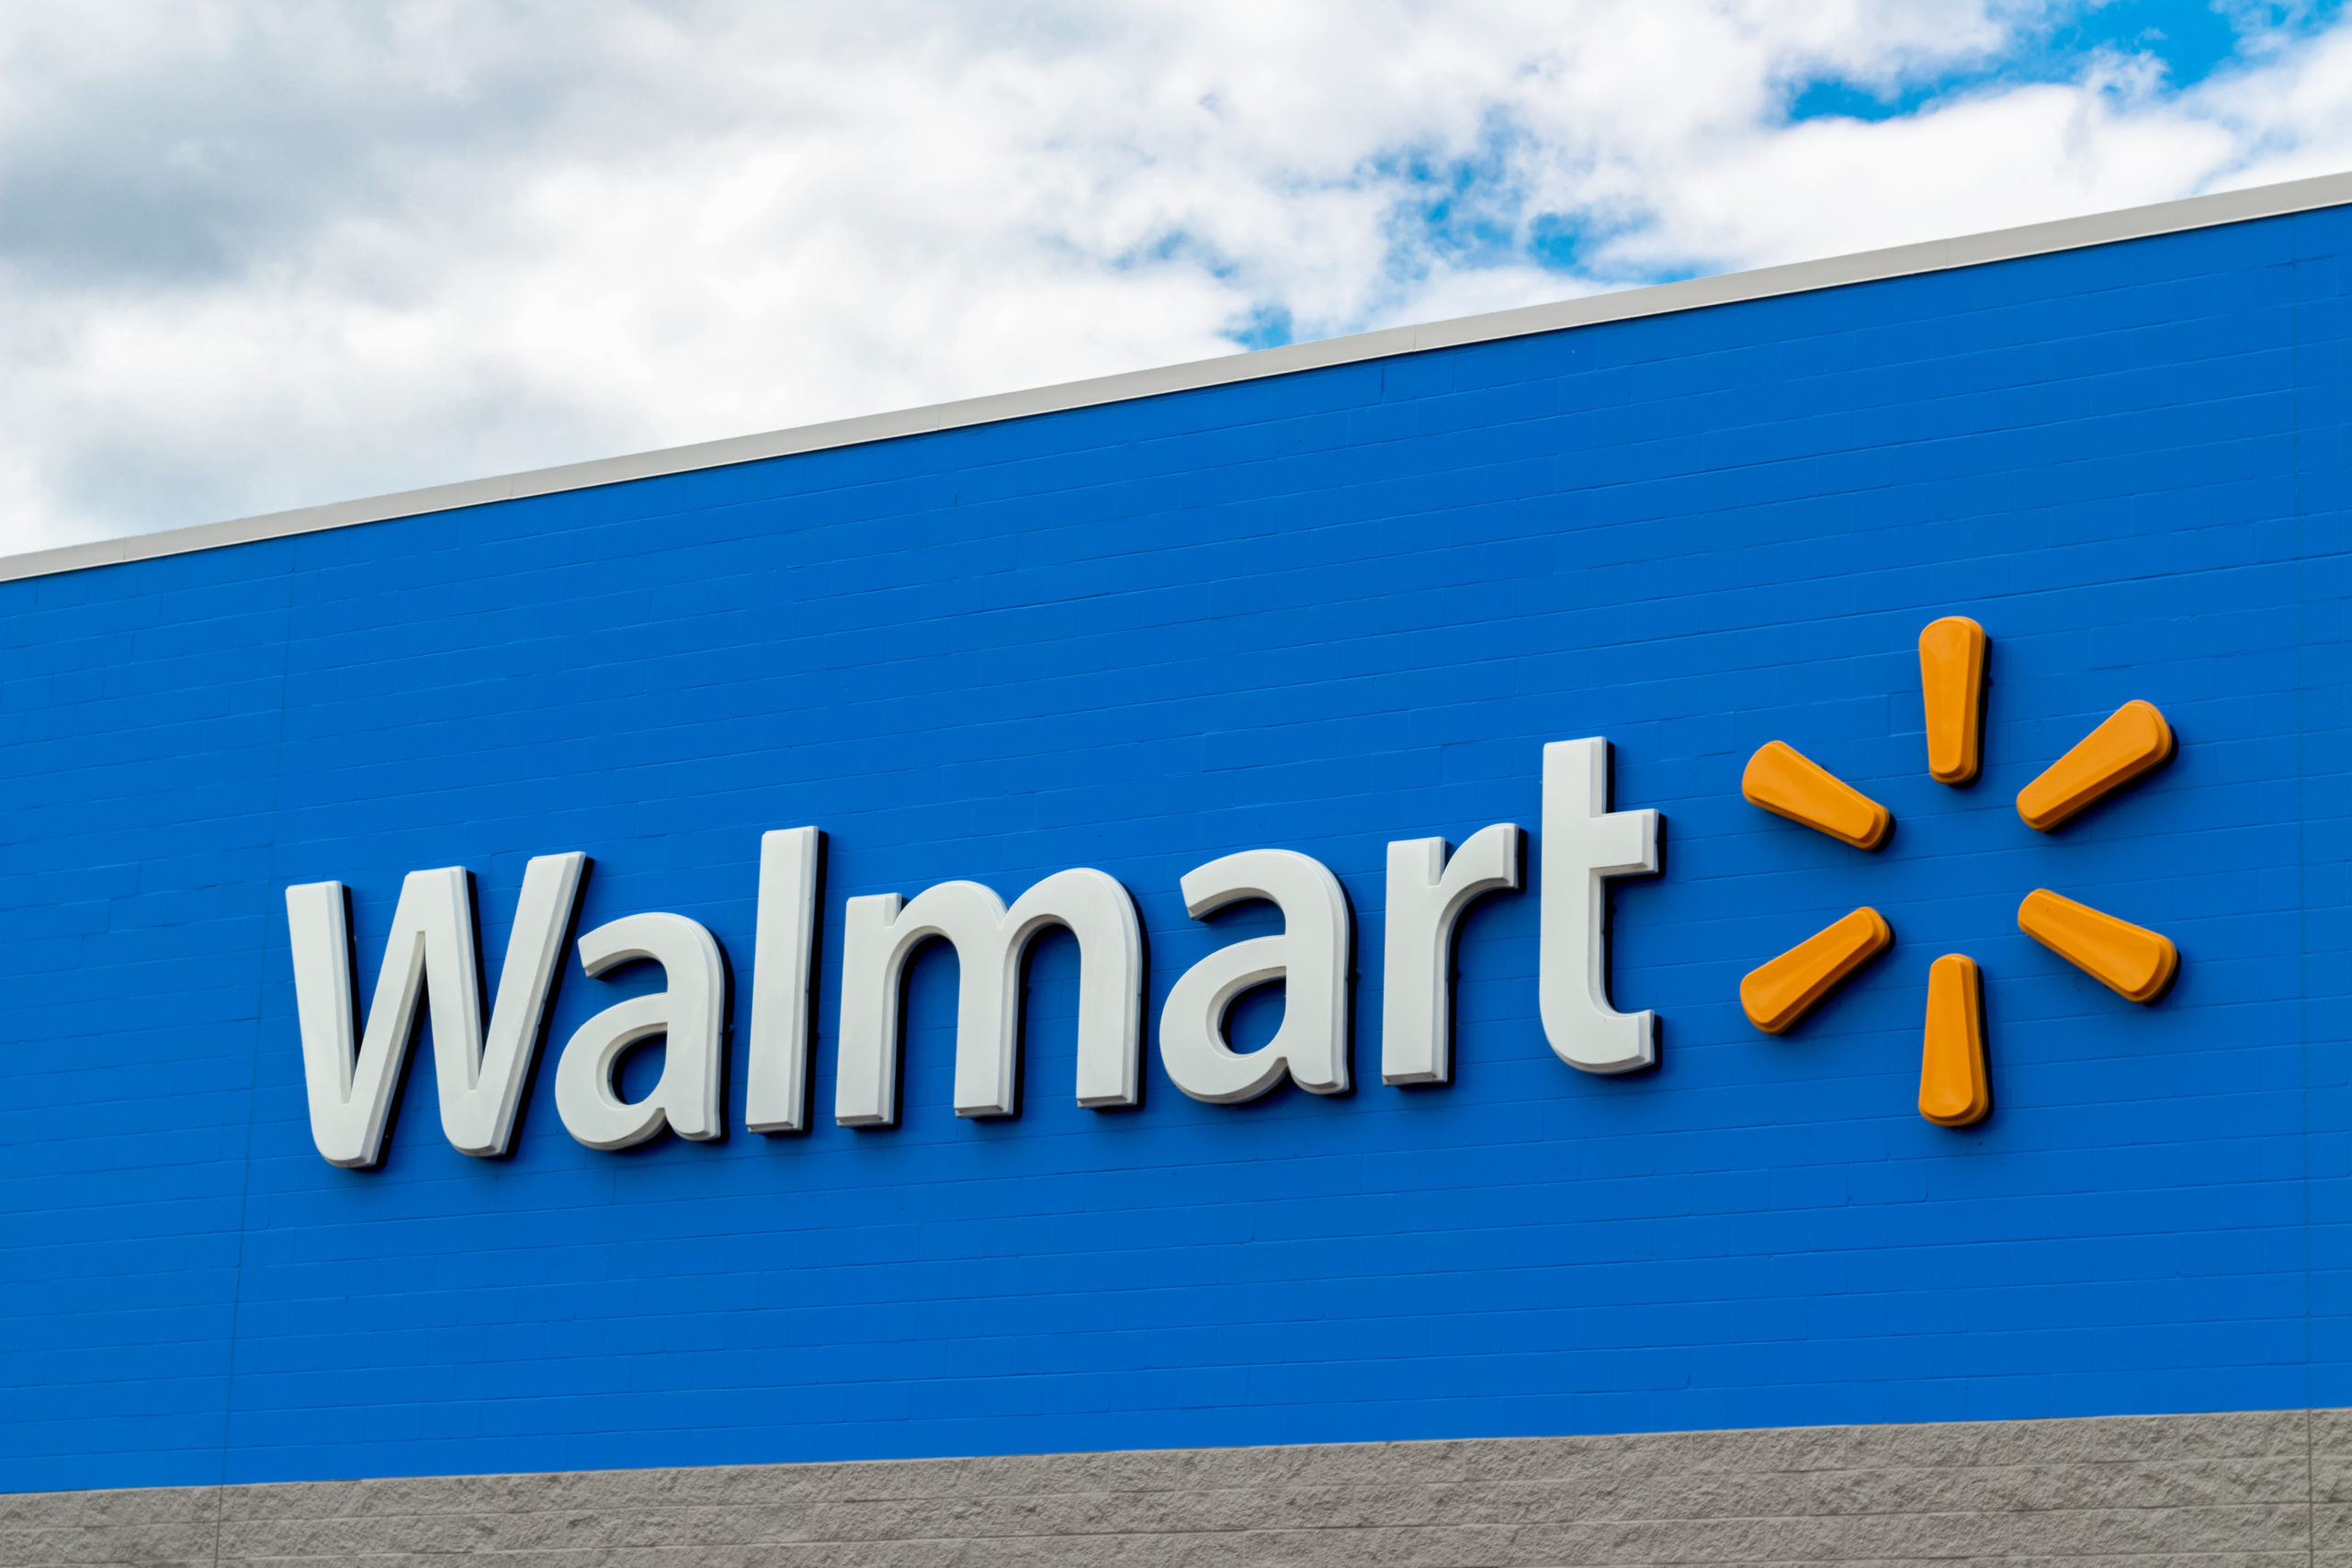 Walmart+ Will Launch September 2020